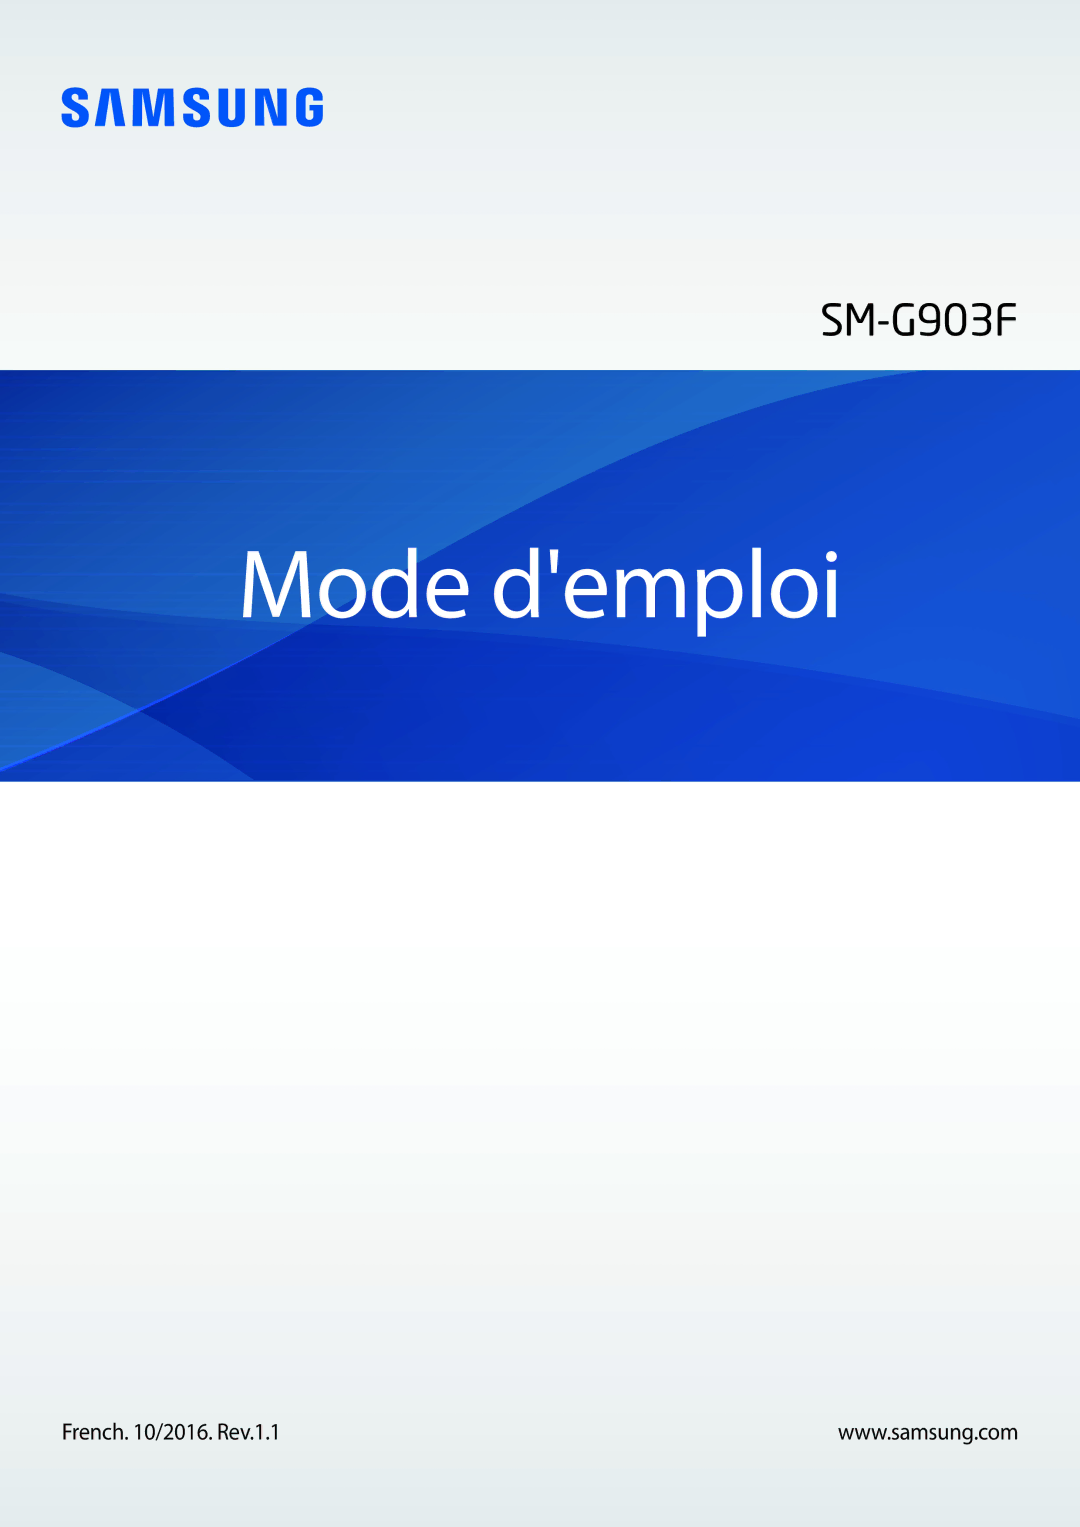 Samsung SM-G903FZKAXEF, SM-G903FZSAXEF, SM-G903FZDAXEF manual Mode demploi 